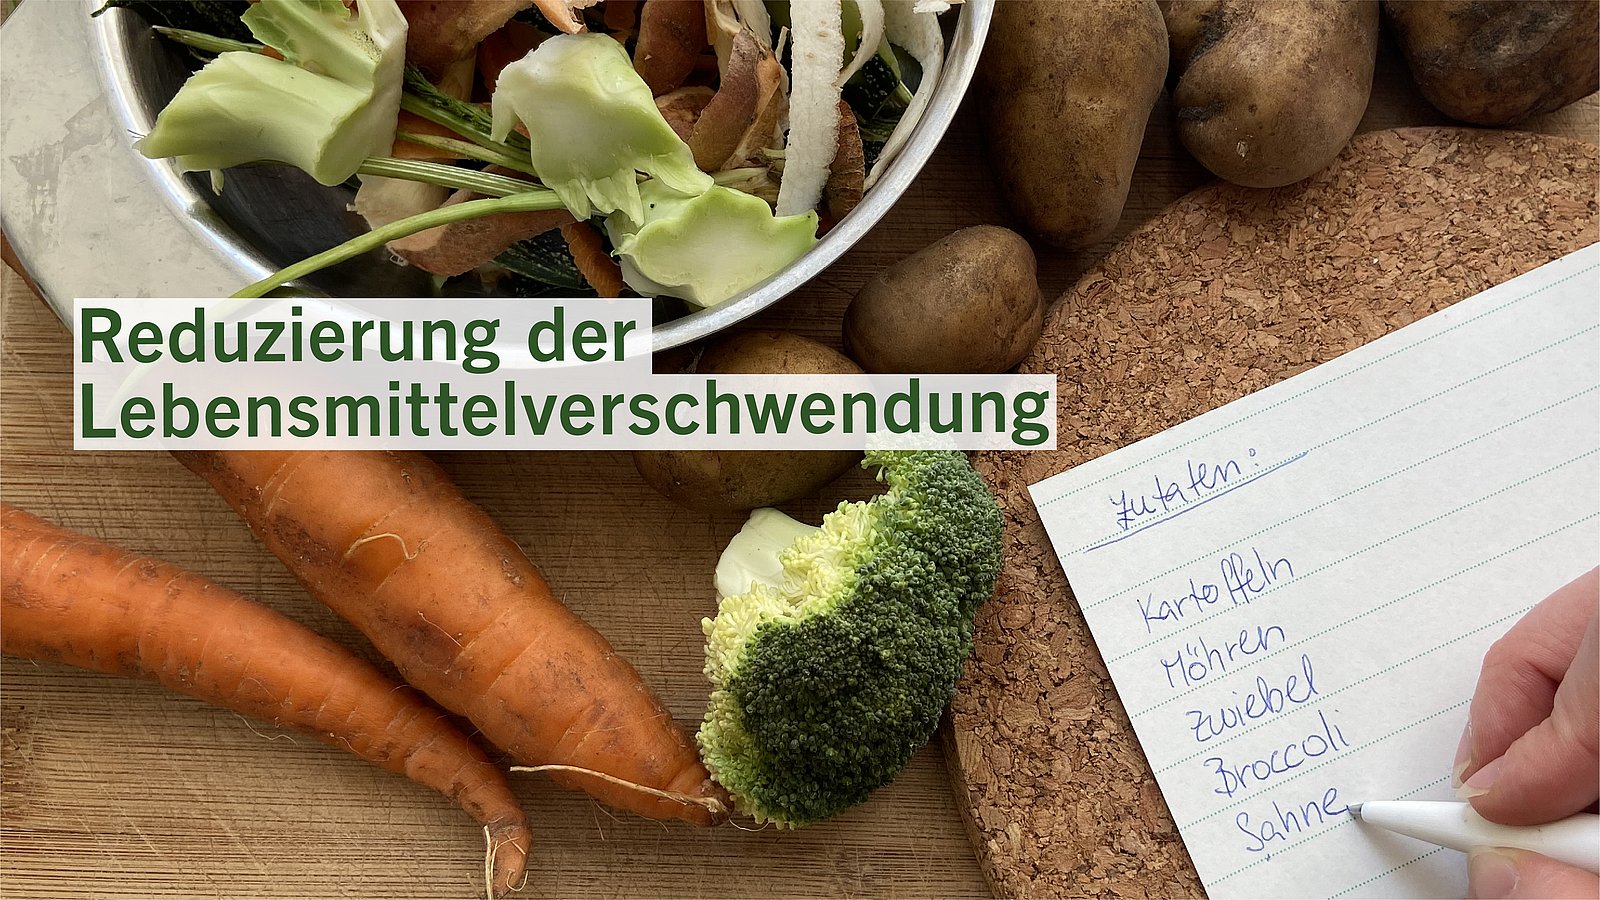 Auf einer Küchentheke liegt Gemüse, daneben eine Einkaufsliste. Auf dem Bild steht der Schriftzug: Reduzierung der Lebensmittelverschwendung.